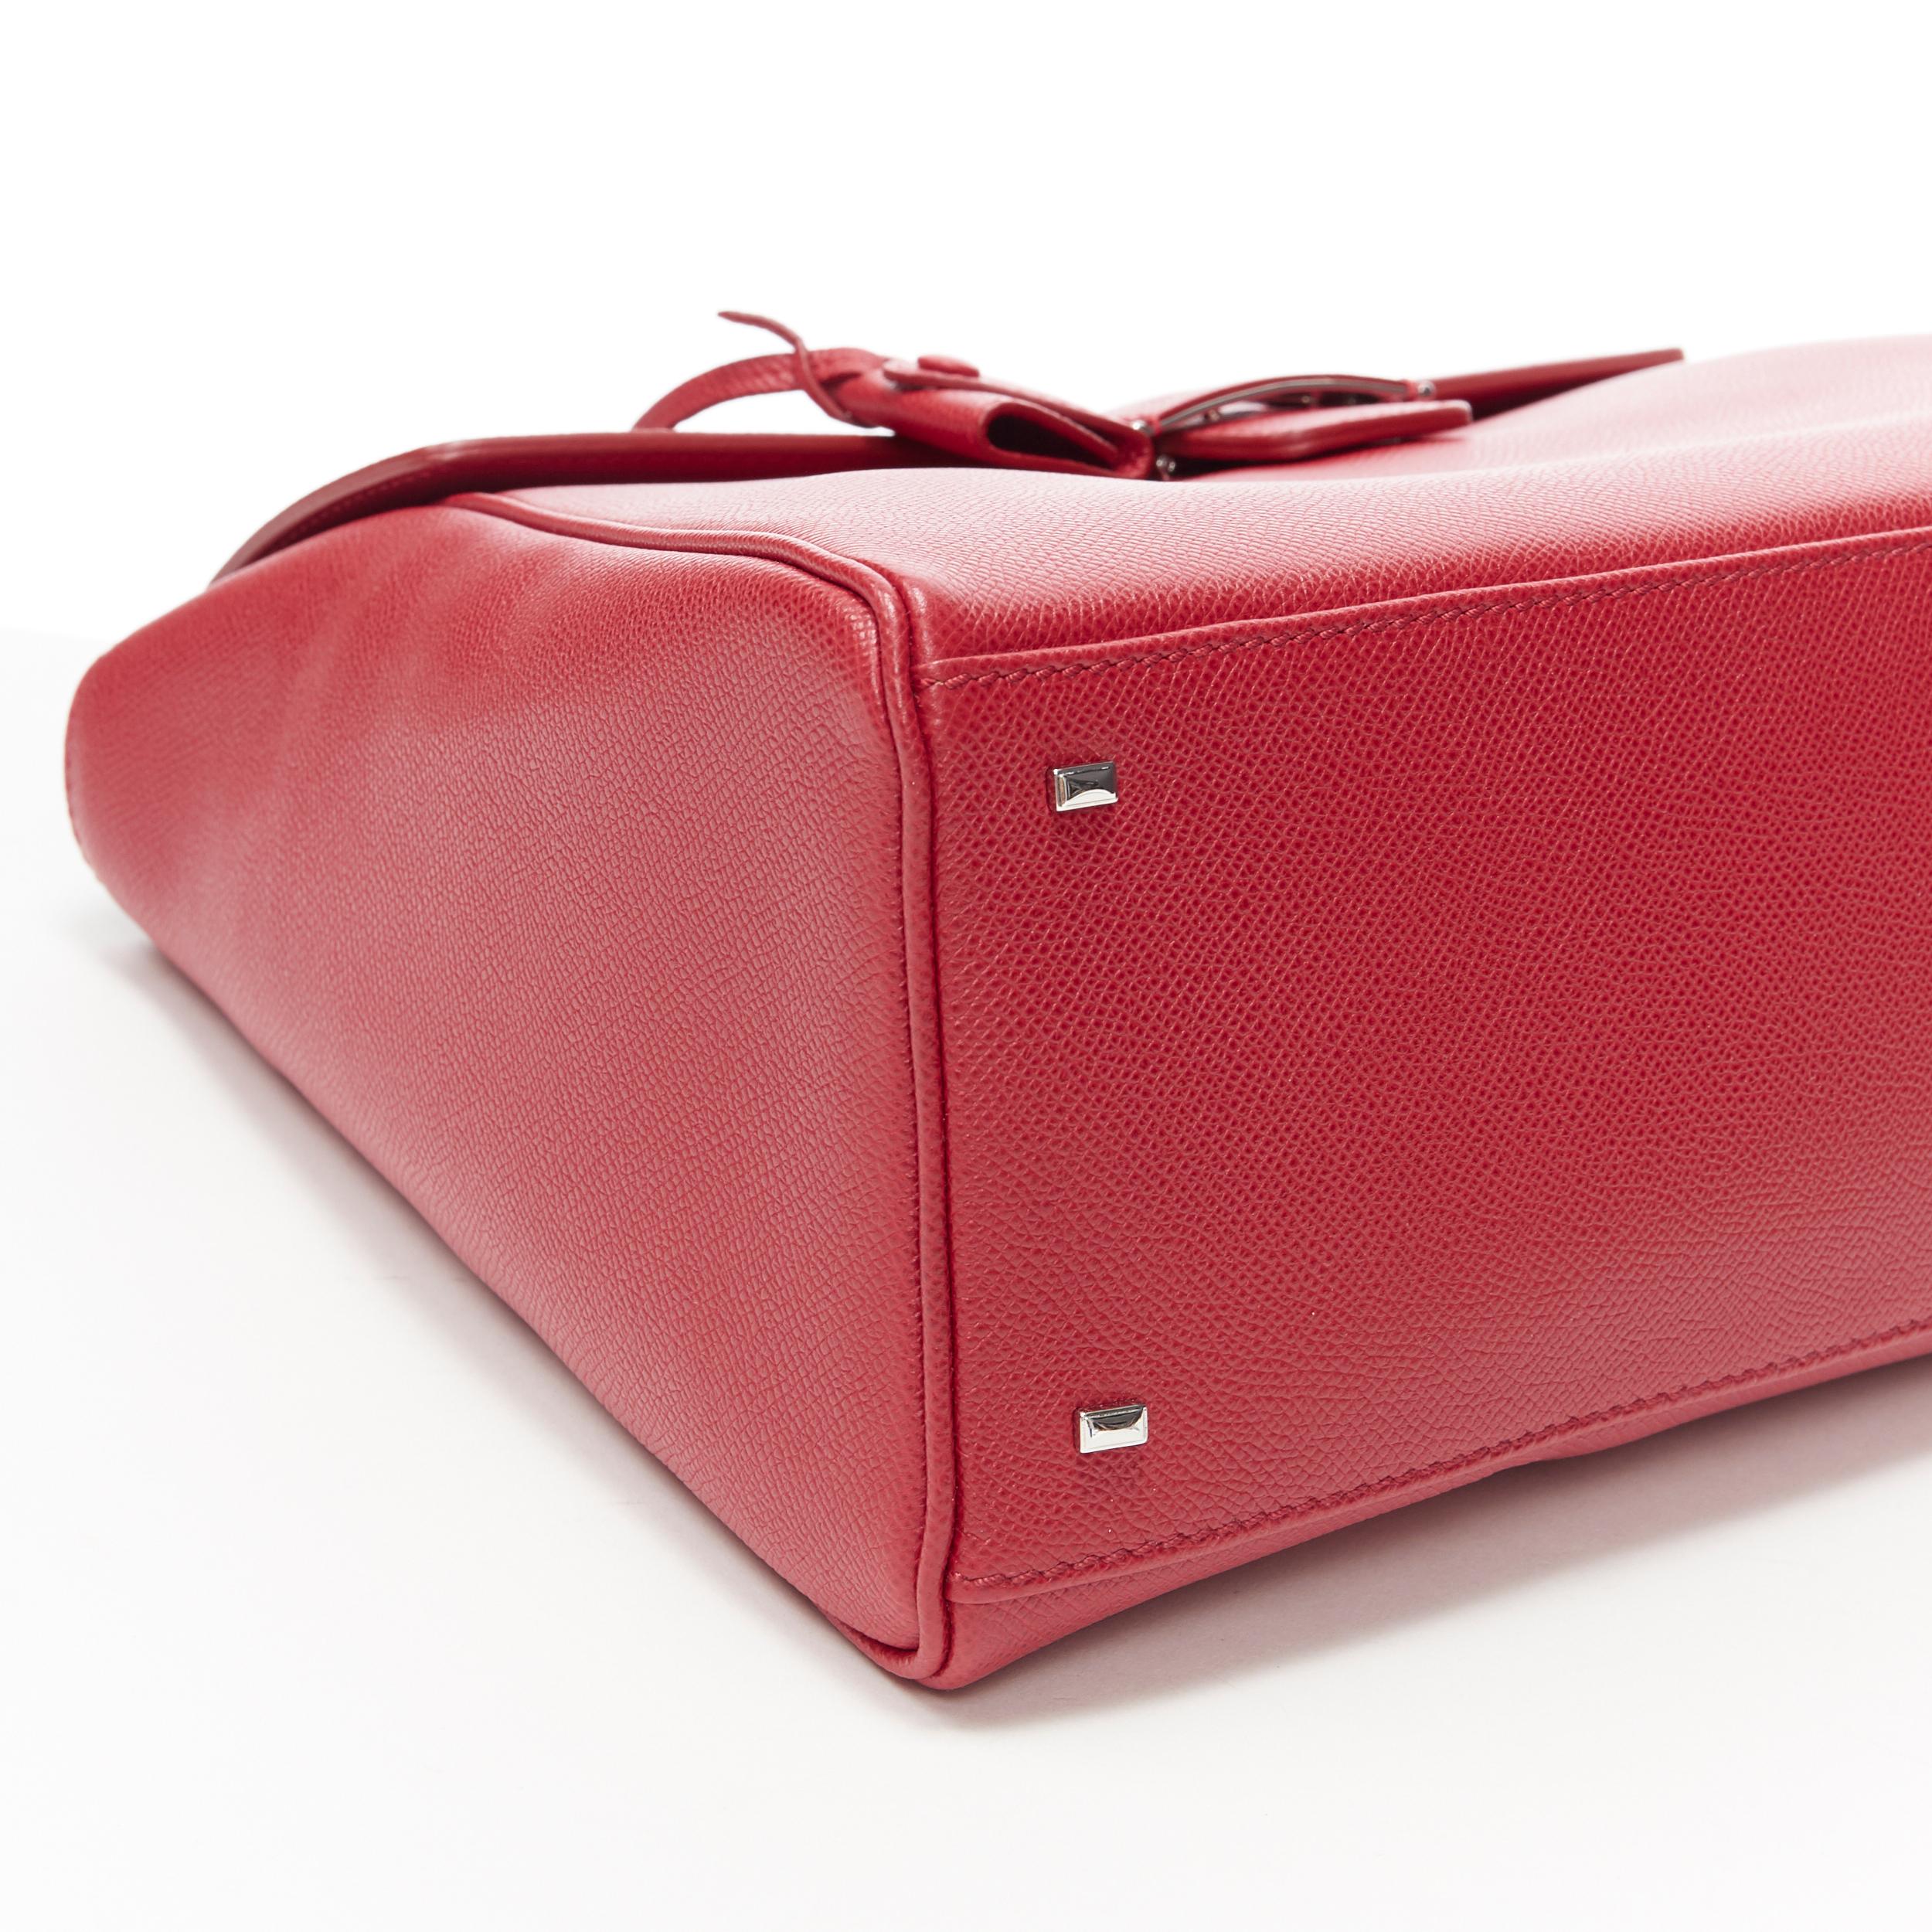 MYRIAM SCHAEFER Byron red leather cut out top handle satchel shoulder bag 2